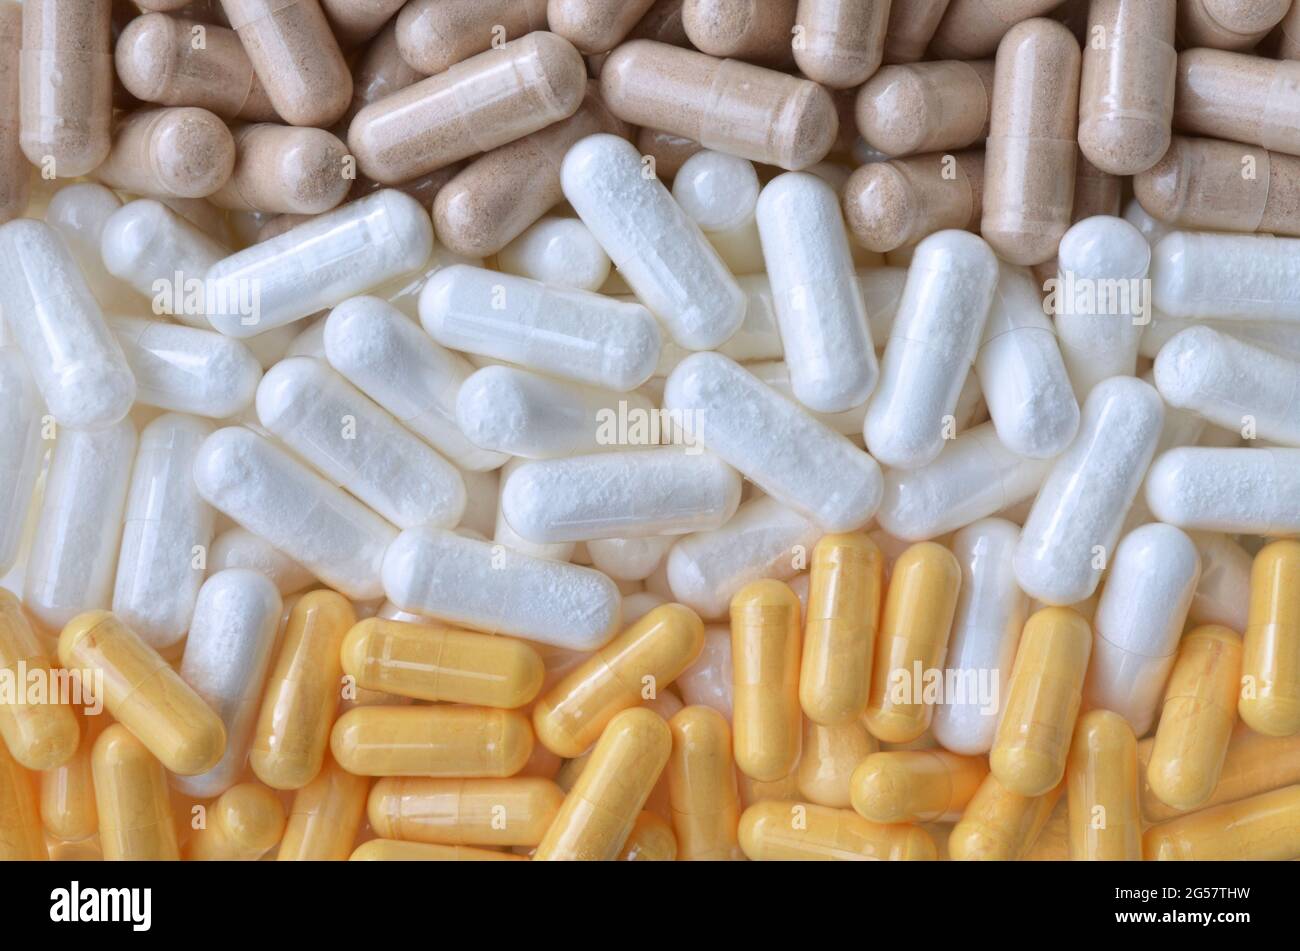 Varie vitamine e integratori alimentari in capsule per la salute e l'immunità come sfondo, vista dall'alto. Trattamento e longevità. Foto Stock